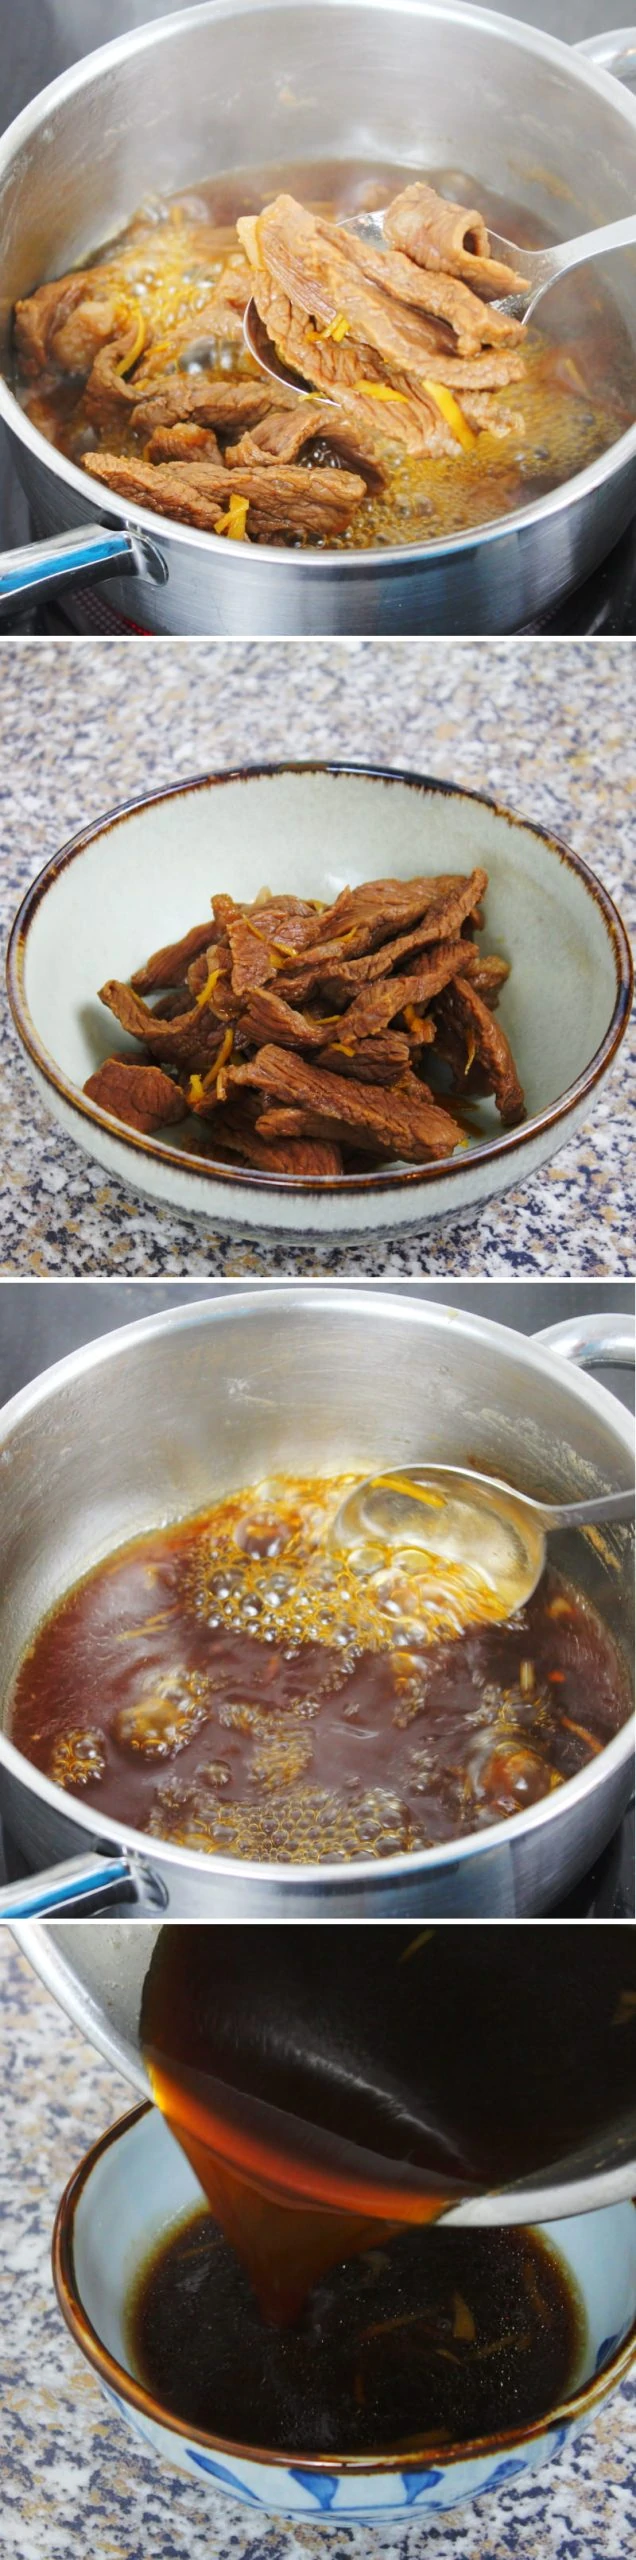 Shigureni Onigiri Schritt 5 Rindersteak kochen